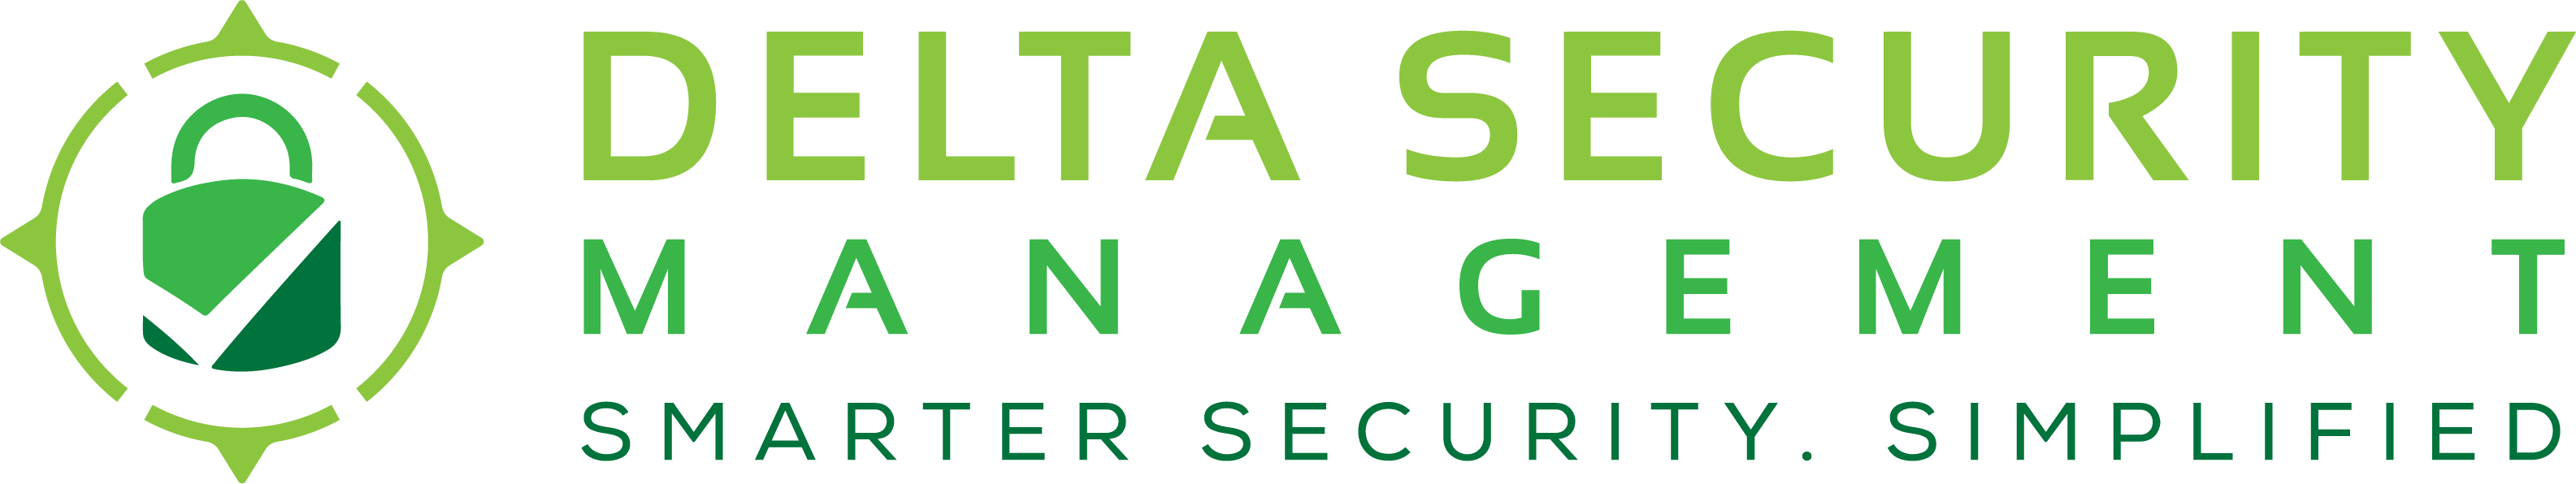 logo for Delta Security Management